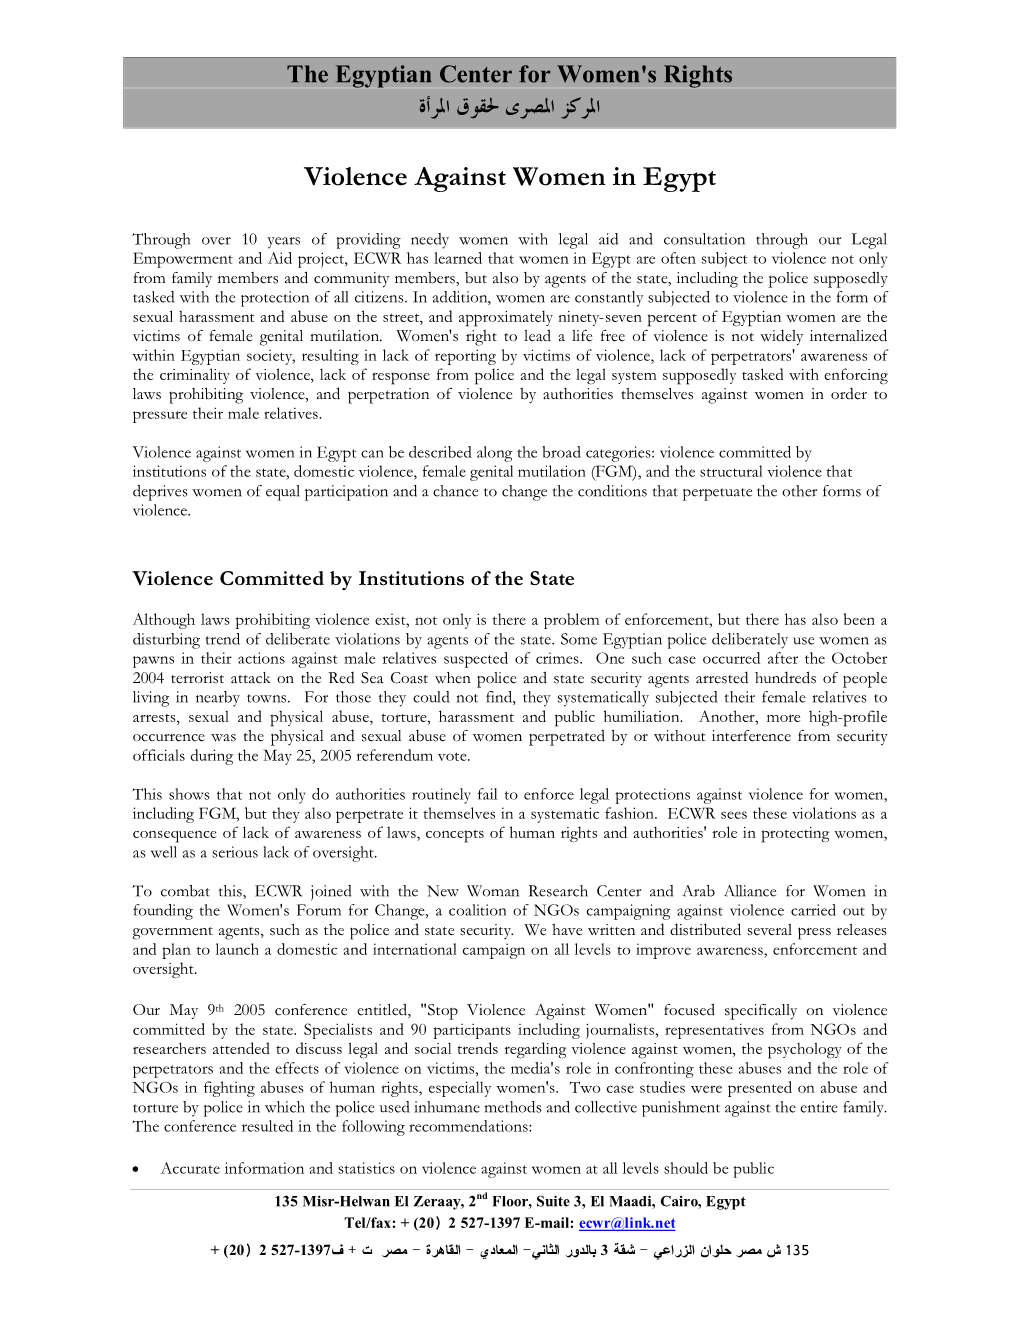 Violence Against Women in Egypt